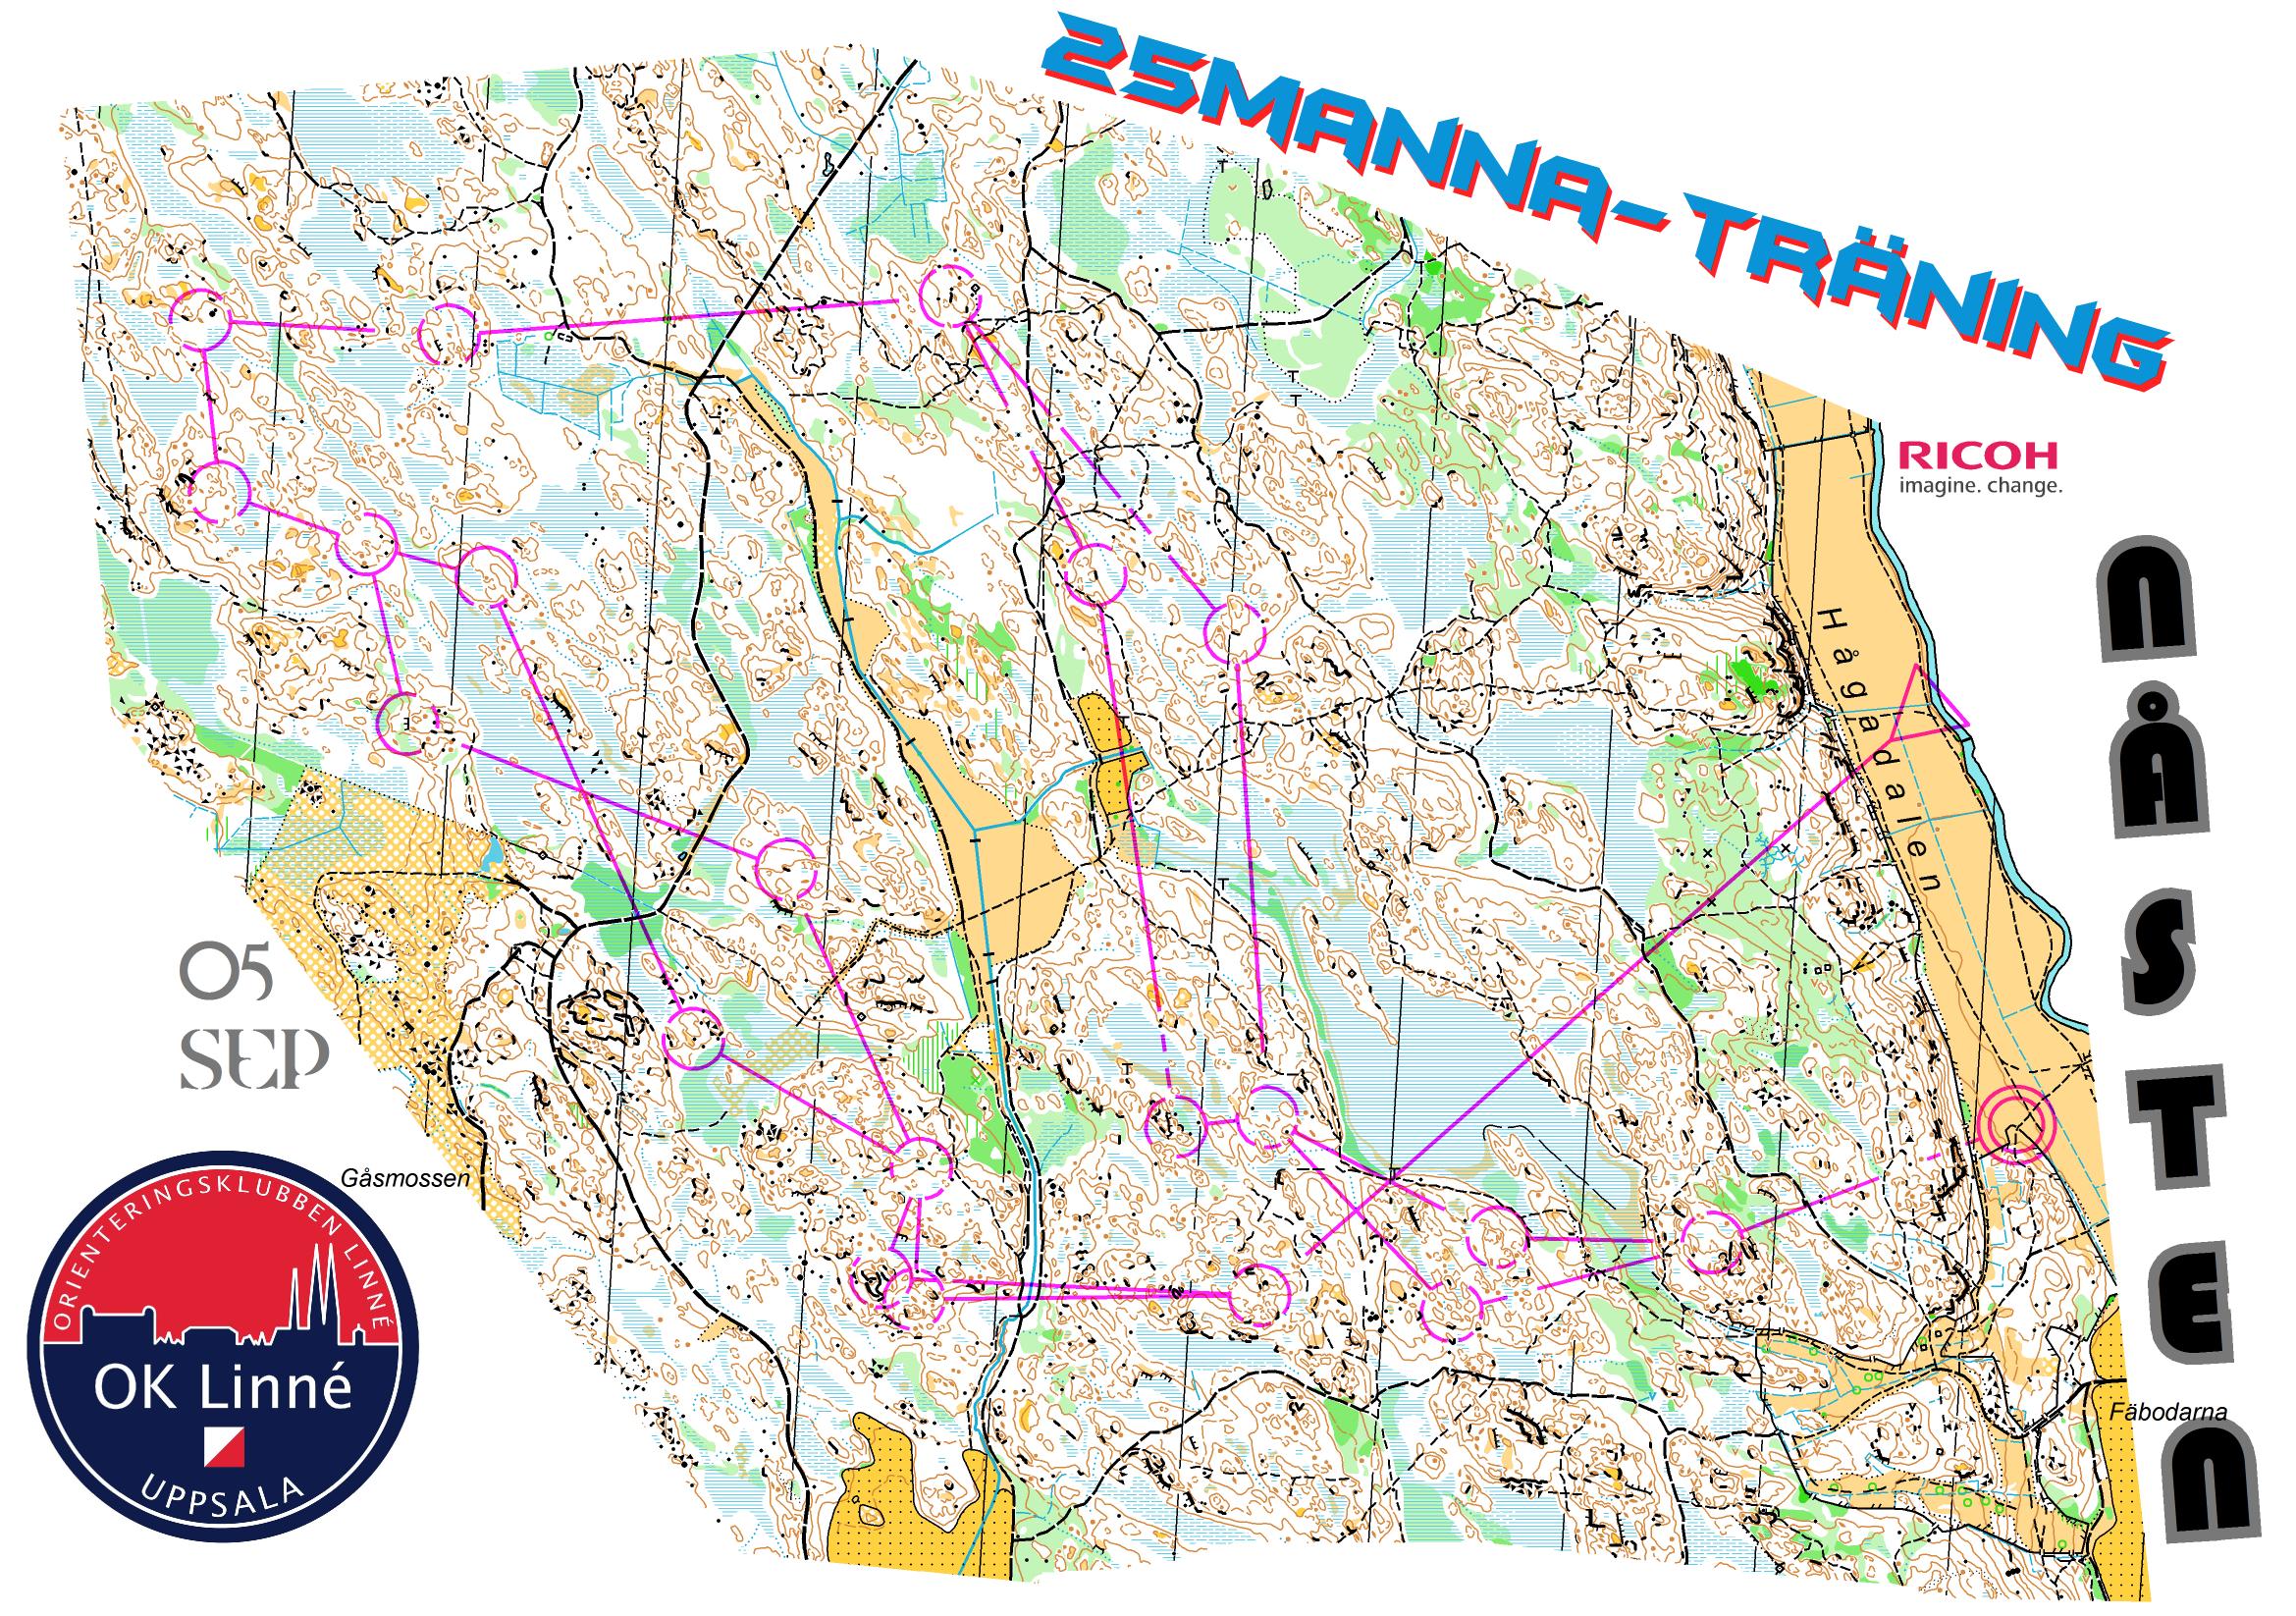 25manna-träning, Lång (05-09-2013)